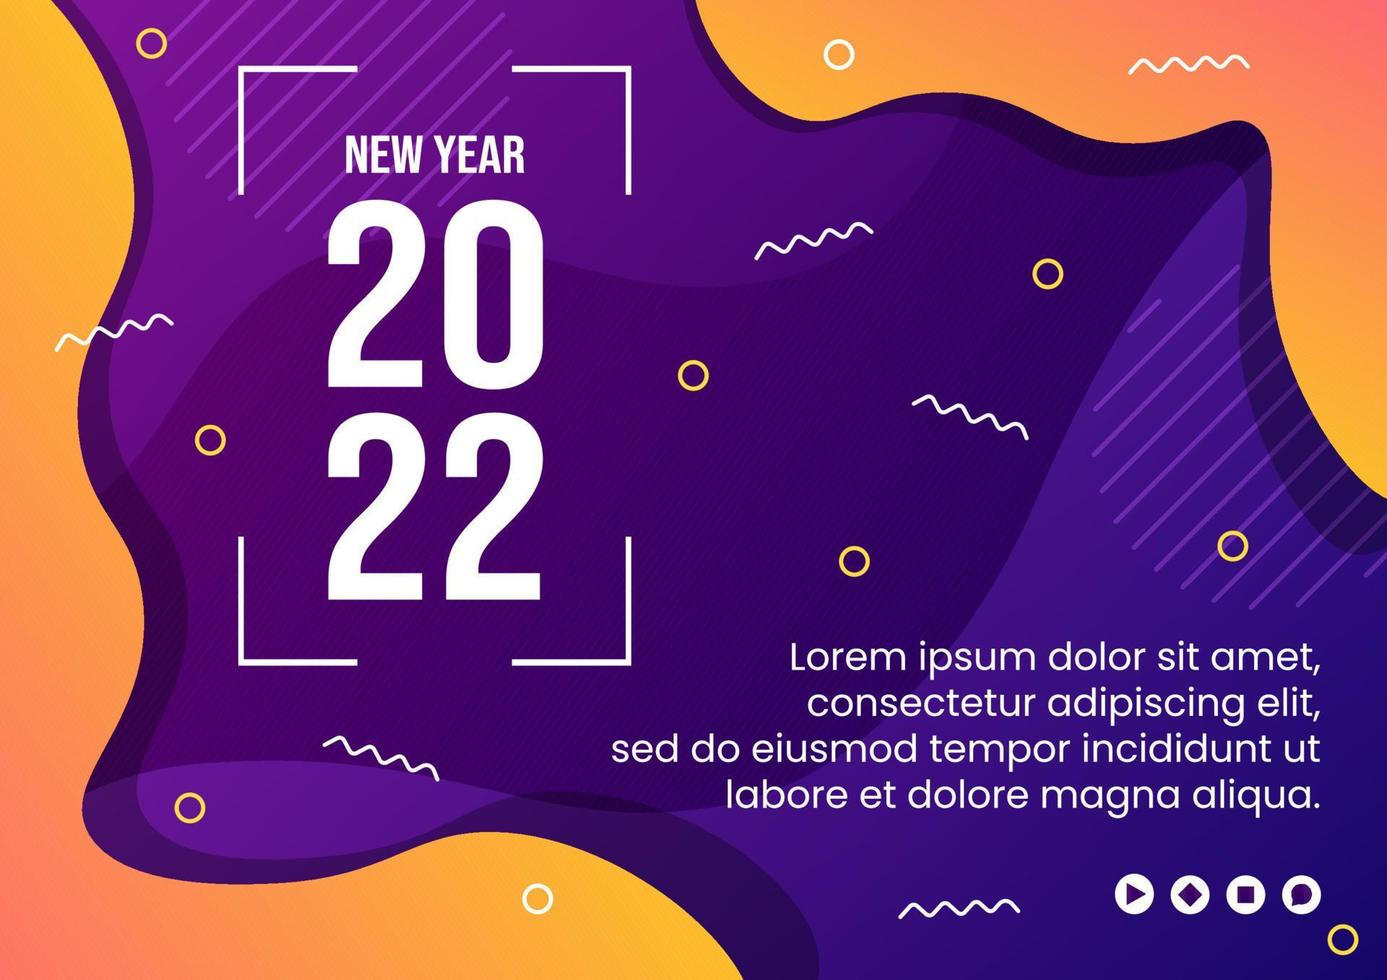 Feliz año nuevo 2022 plantilla de folleto ilustración de diseño plano editable de fondo cuadrado adecuado para redes sociales, alimentación, tarjetas, saludos y anuncios web en Internet vector